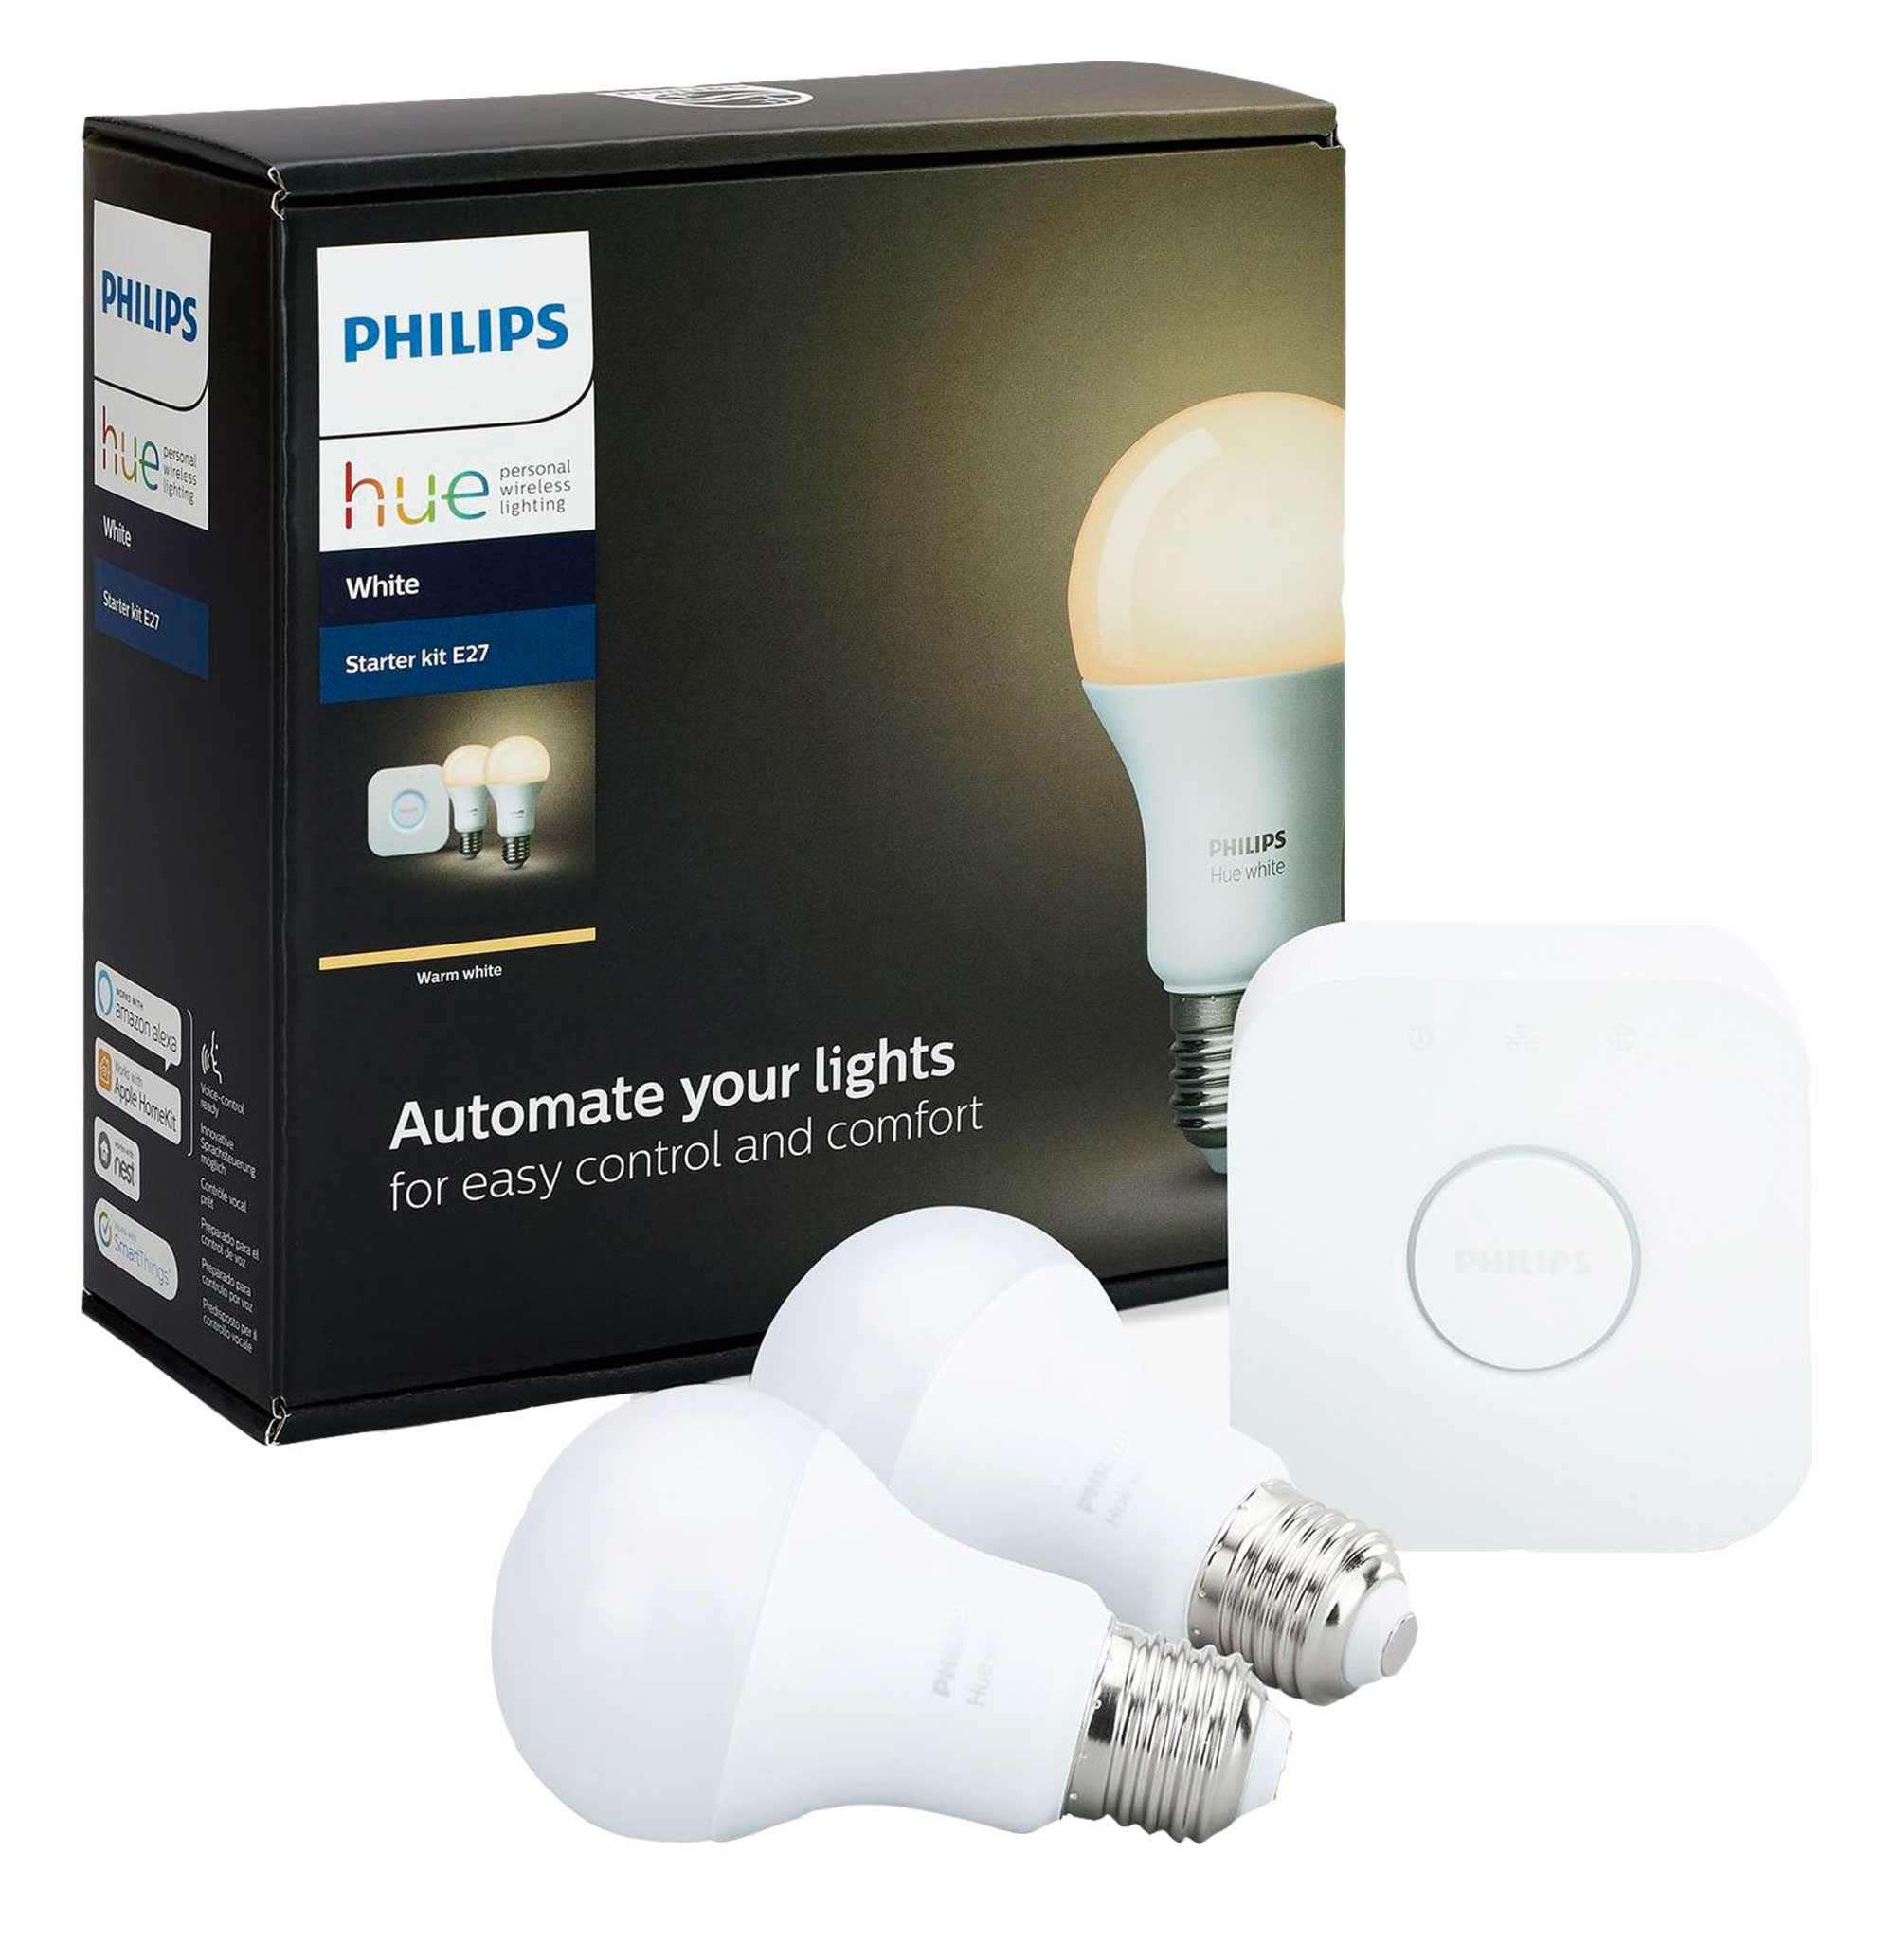 Pihilips smart lightbulbs from John Lewis